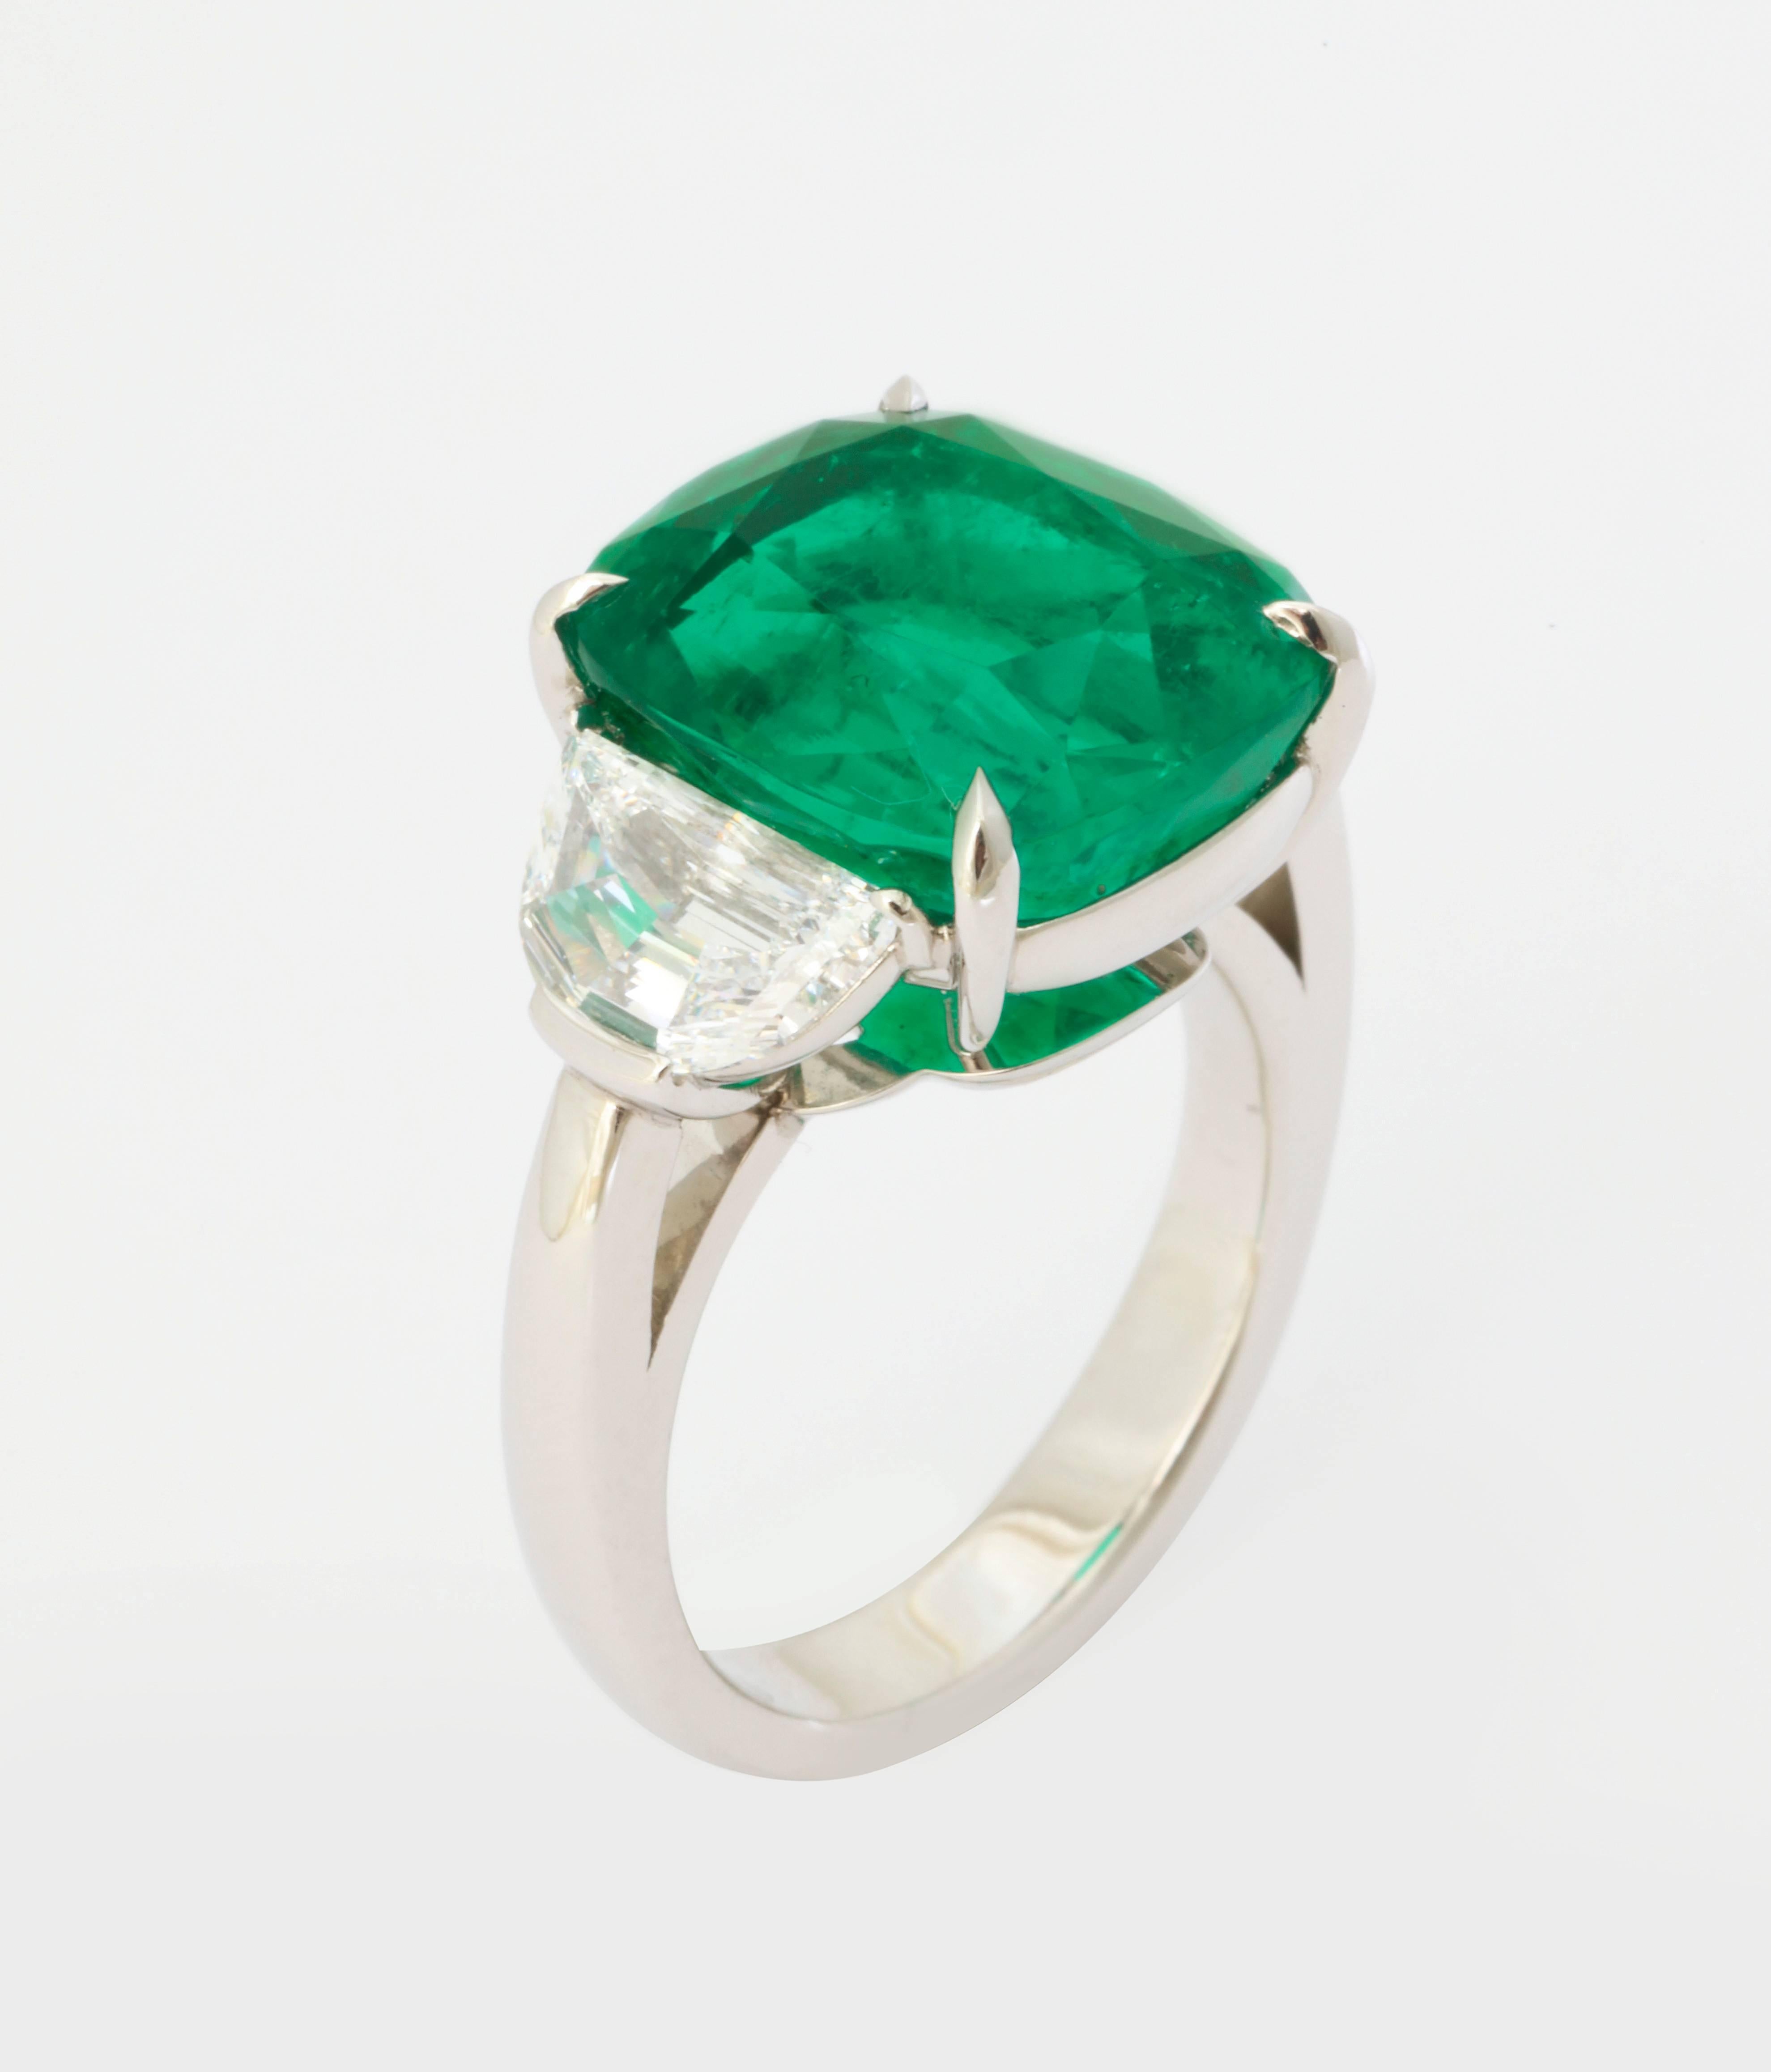 superior quality emeralds